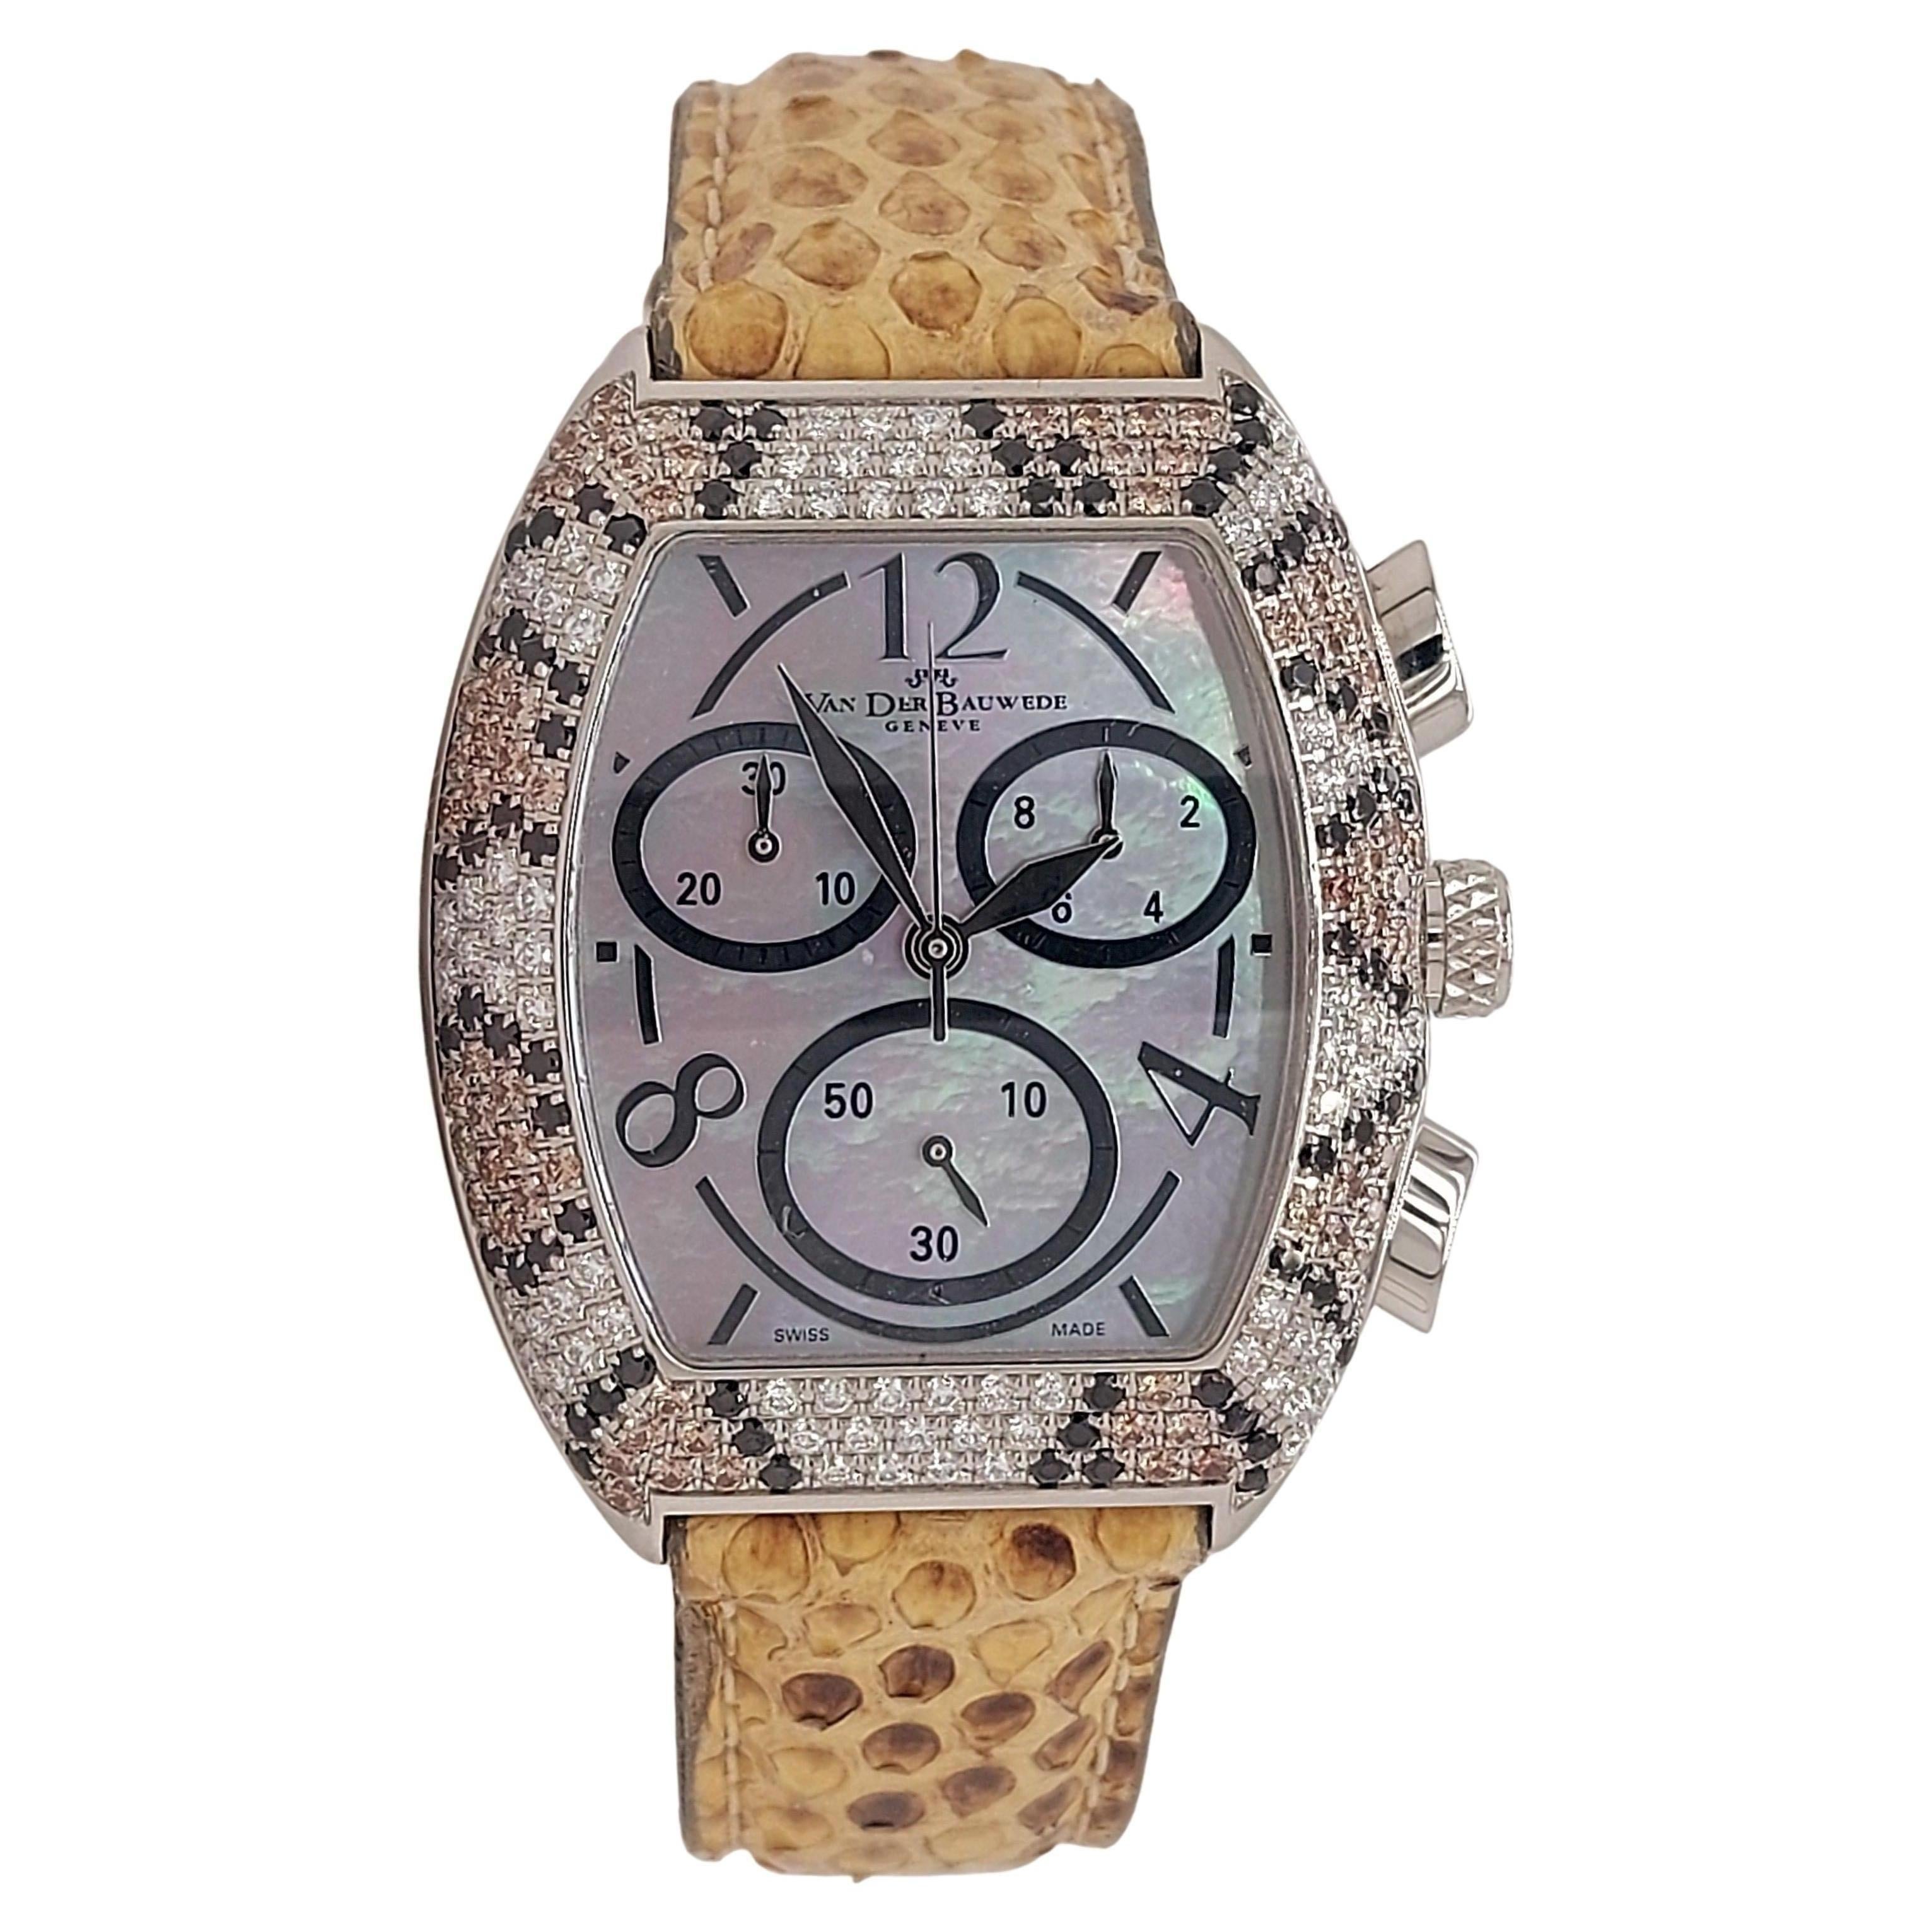 Van der Bauwede Magnum XS Chronograph Uhr, schwarze, cognacfarbene und weiße Diamanten